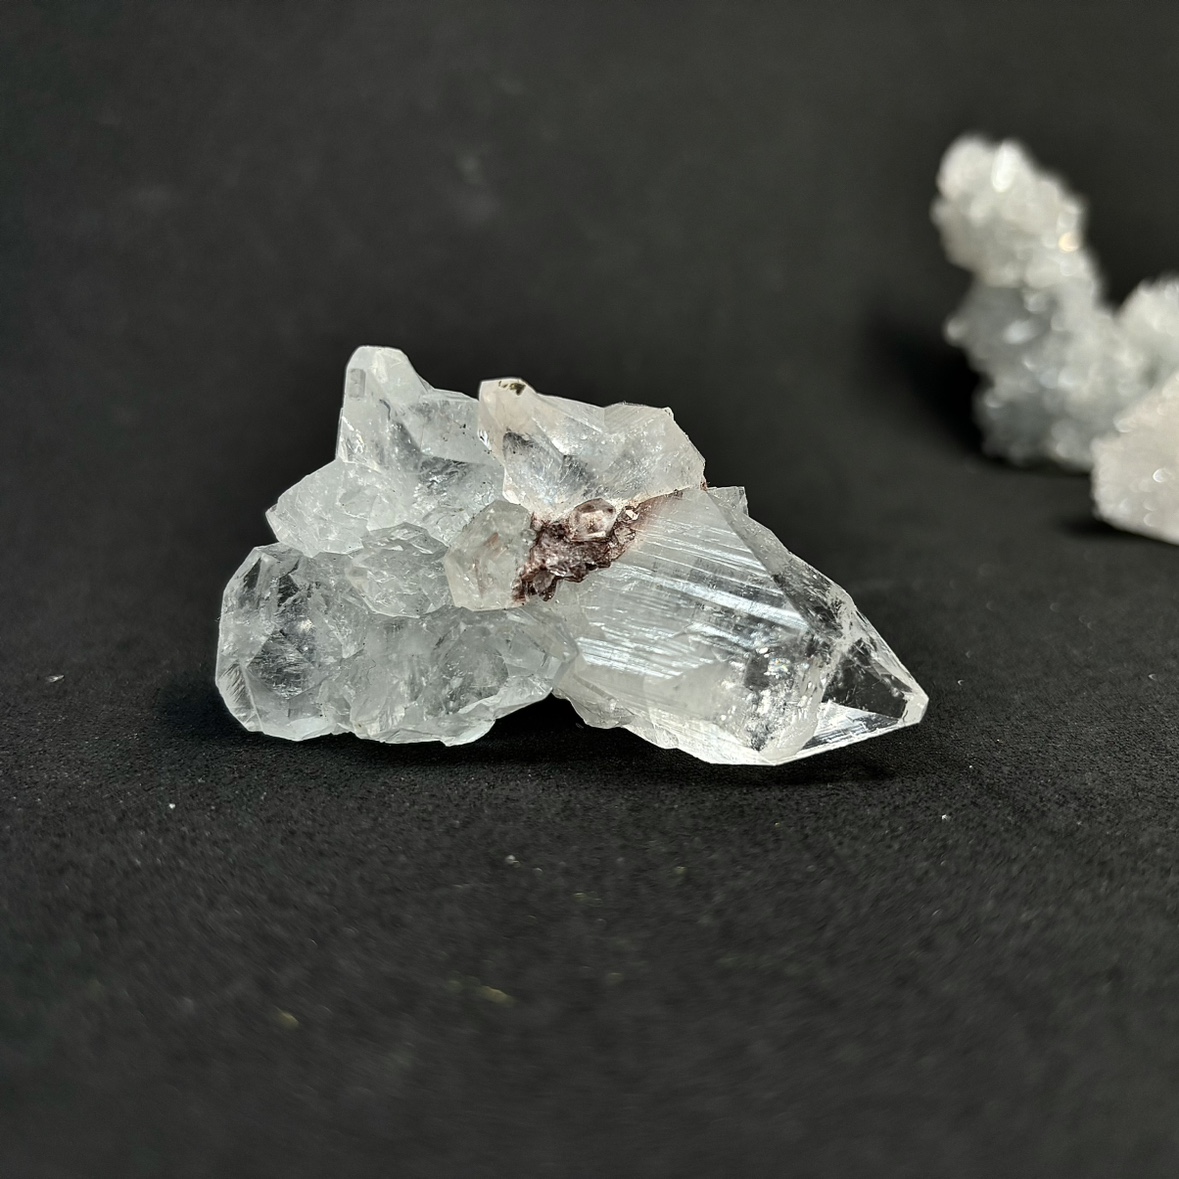 钻石鱼眼石原石天然矿物晶体标本猫矿石能量石晶宝石地质科普教学